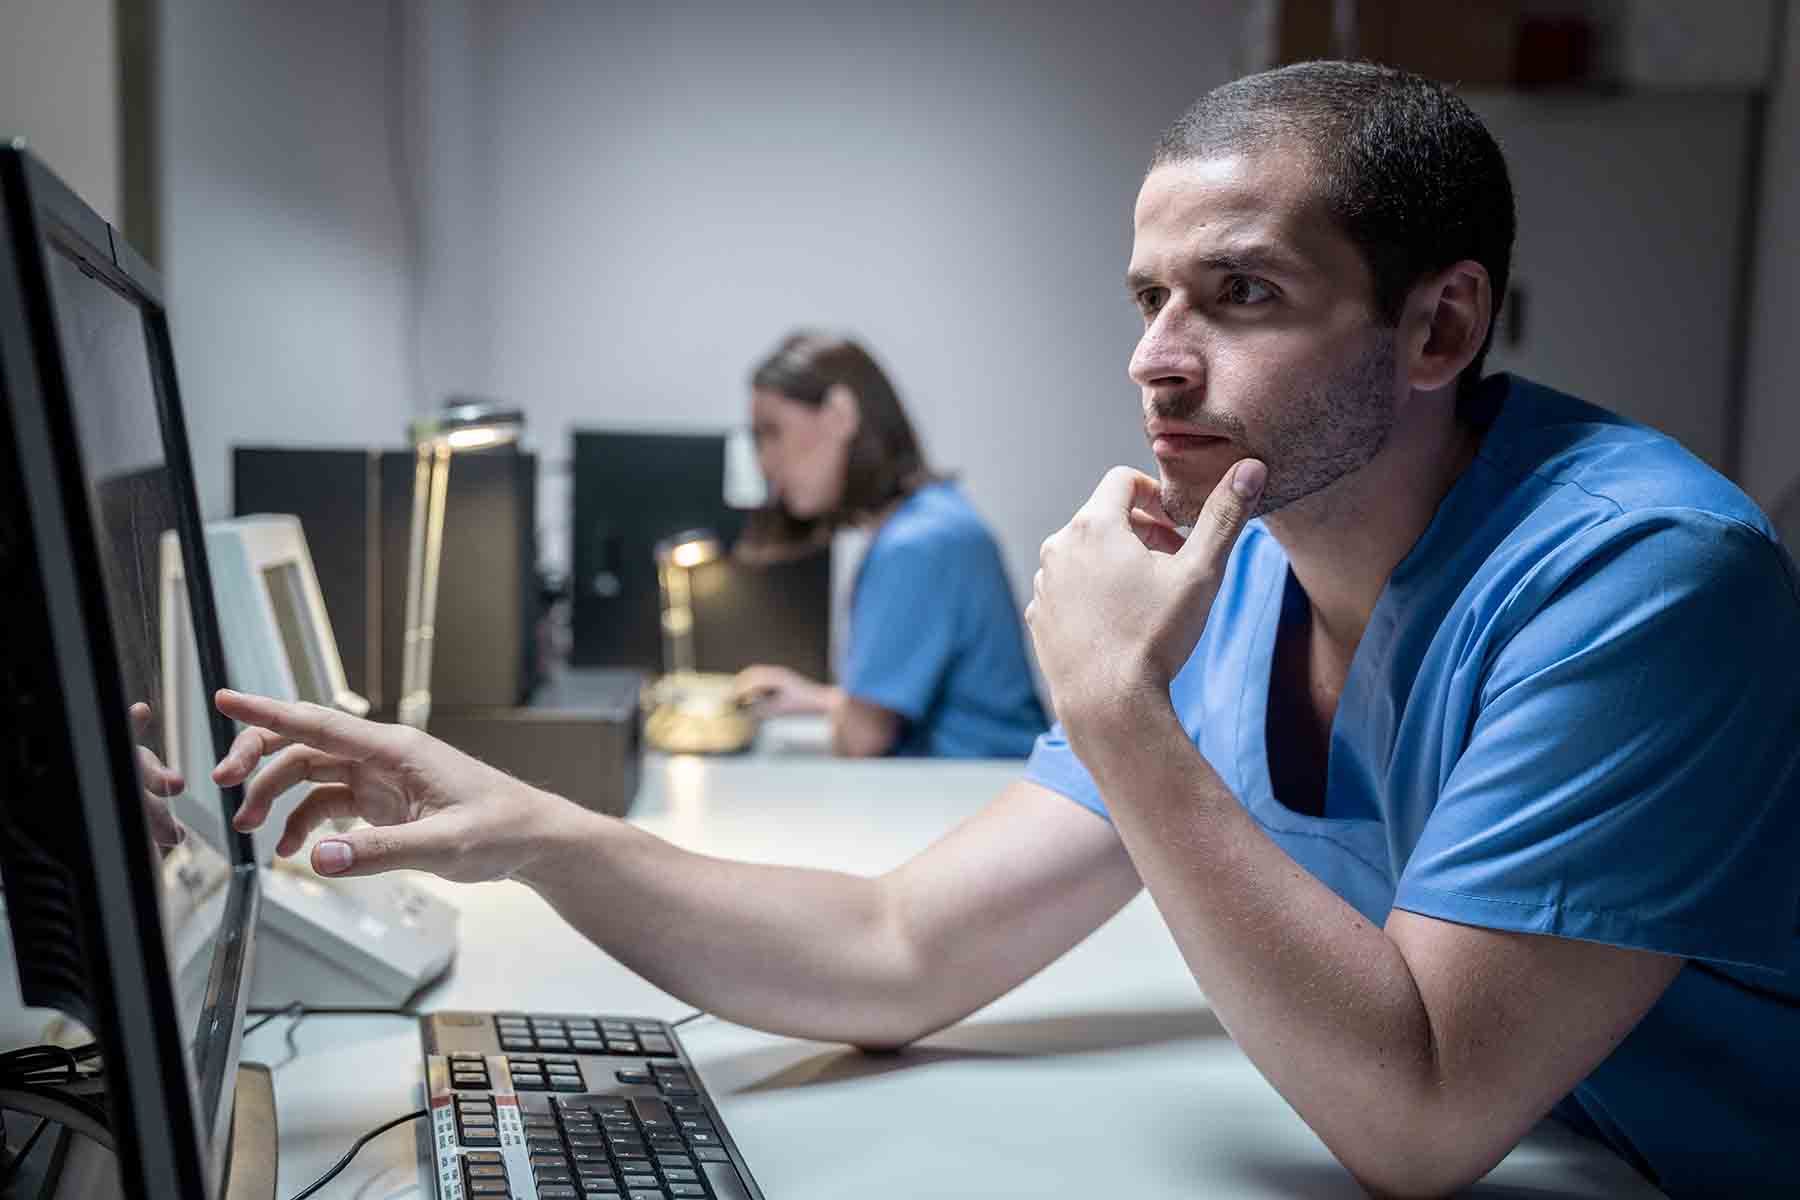 Hospitales también pueden ser víctimas de ciberataques, experto